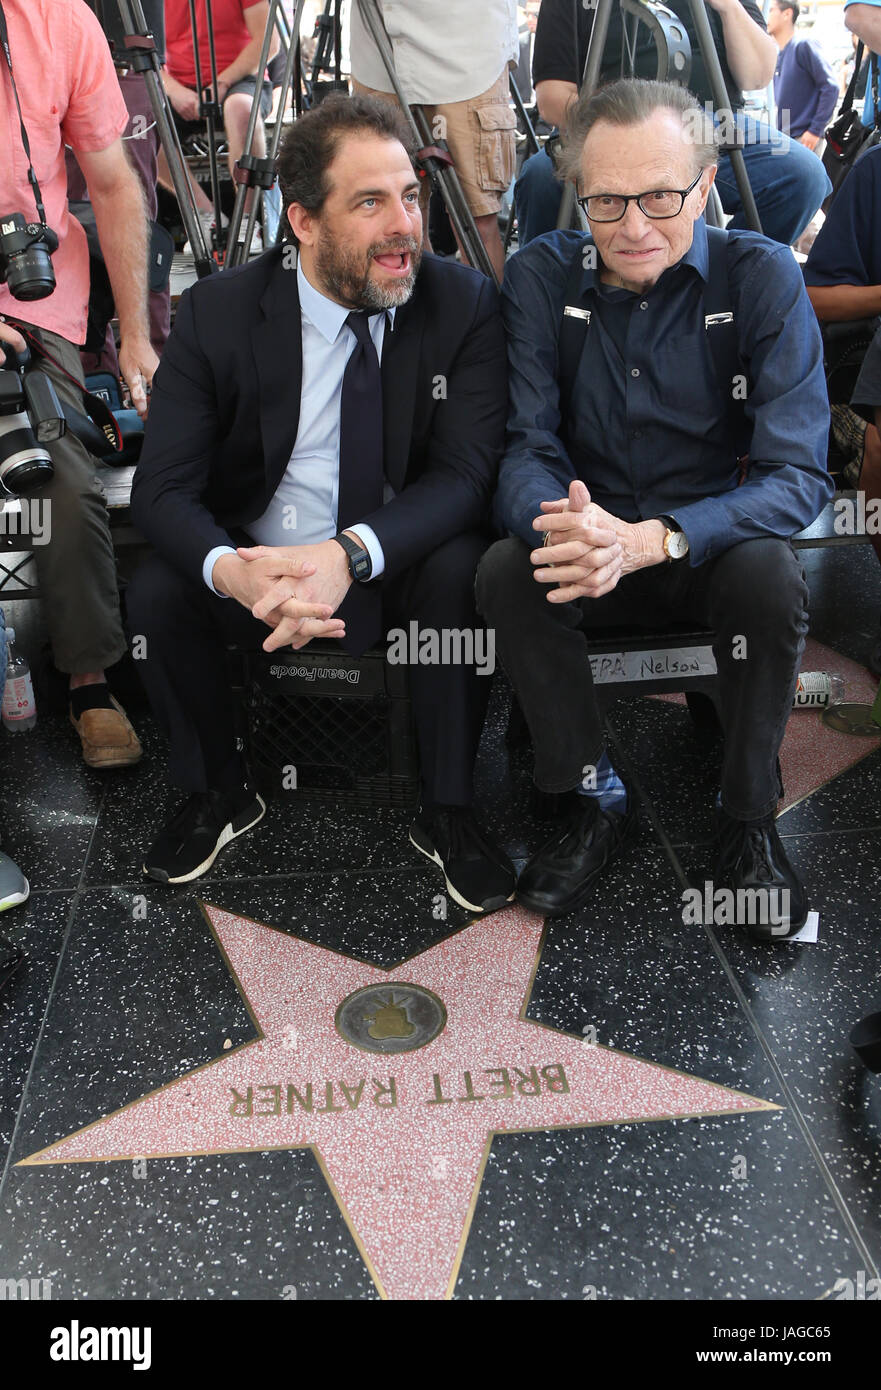 Wolfgang Puck geehrt mit Stern auf dem Hollywood Walk Of Fame mit: Brett Ratner, Larry King Where: Hollywood, Kalifornien, Vereinigte Staaten, wann: 26. April 2017 Kredit: FayesVision/WENN.com Stockfoto